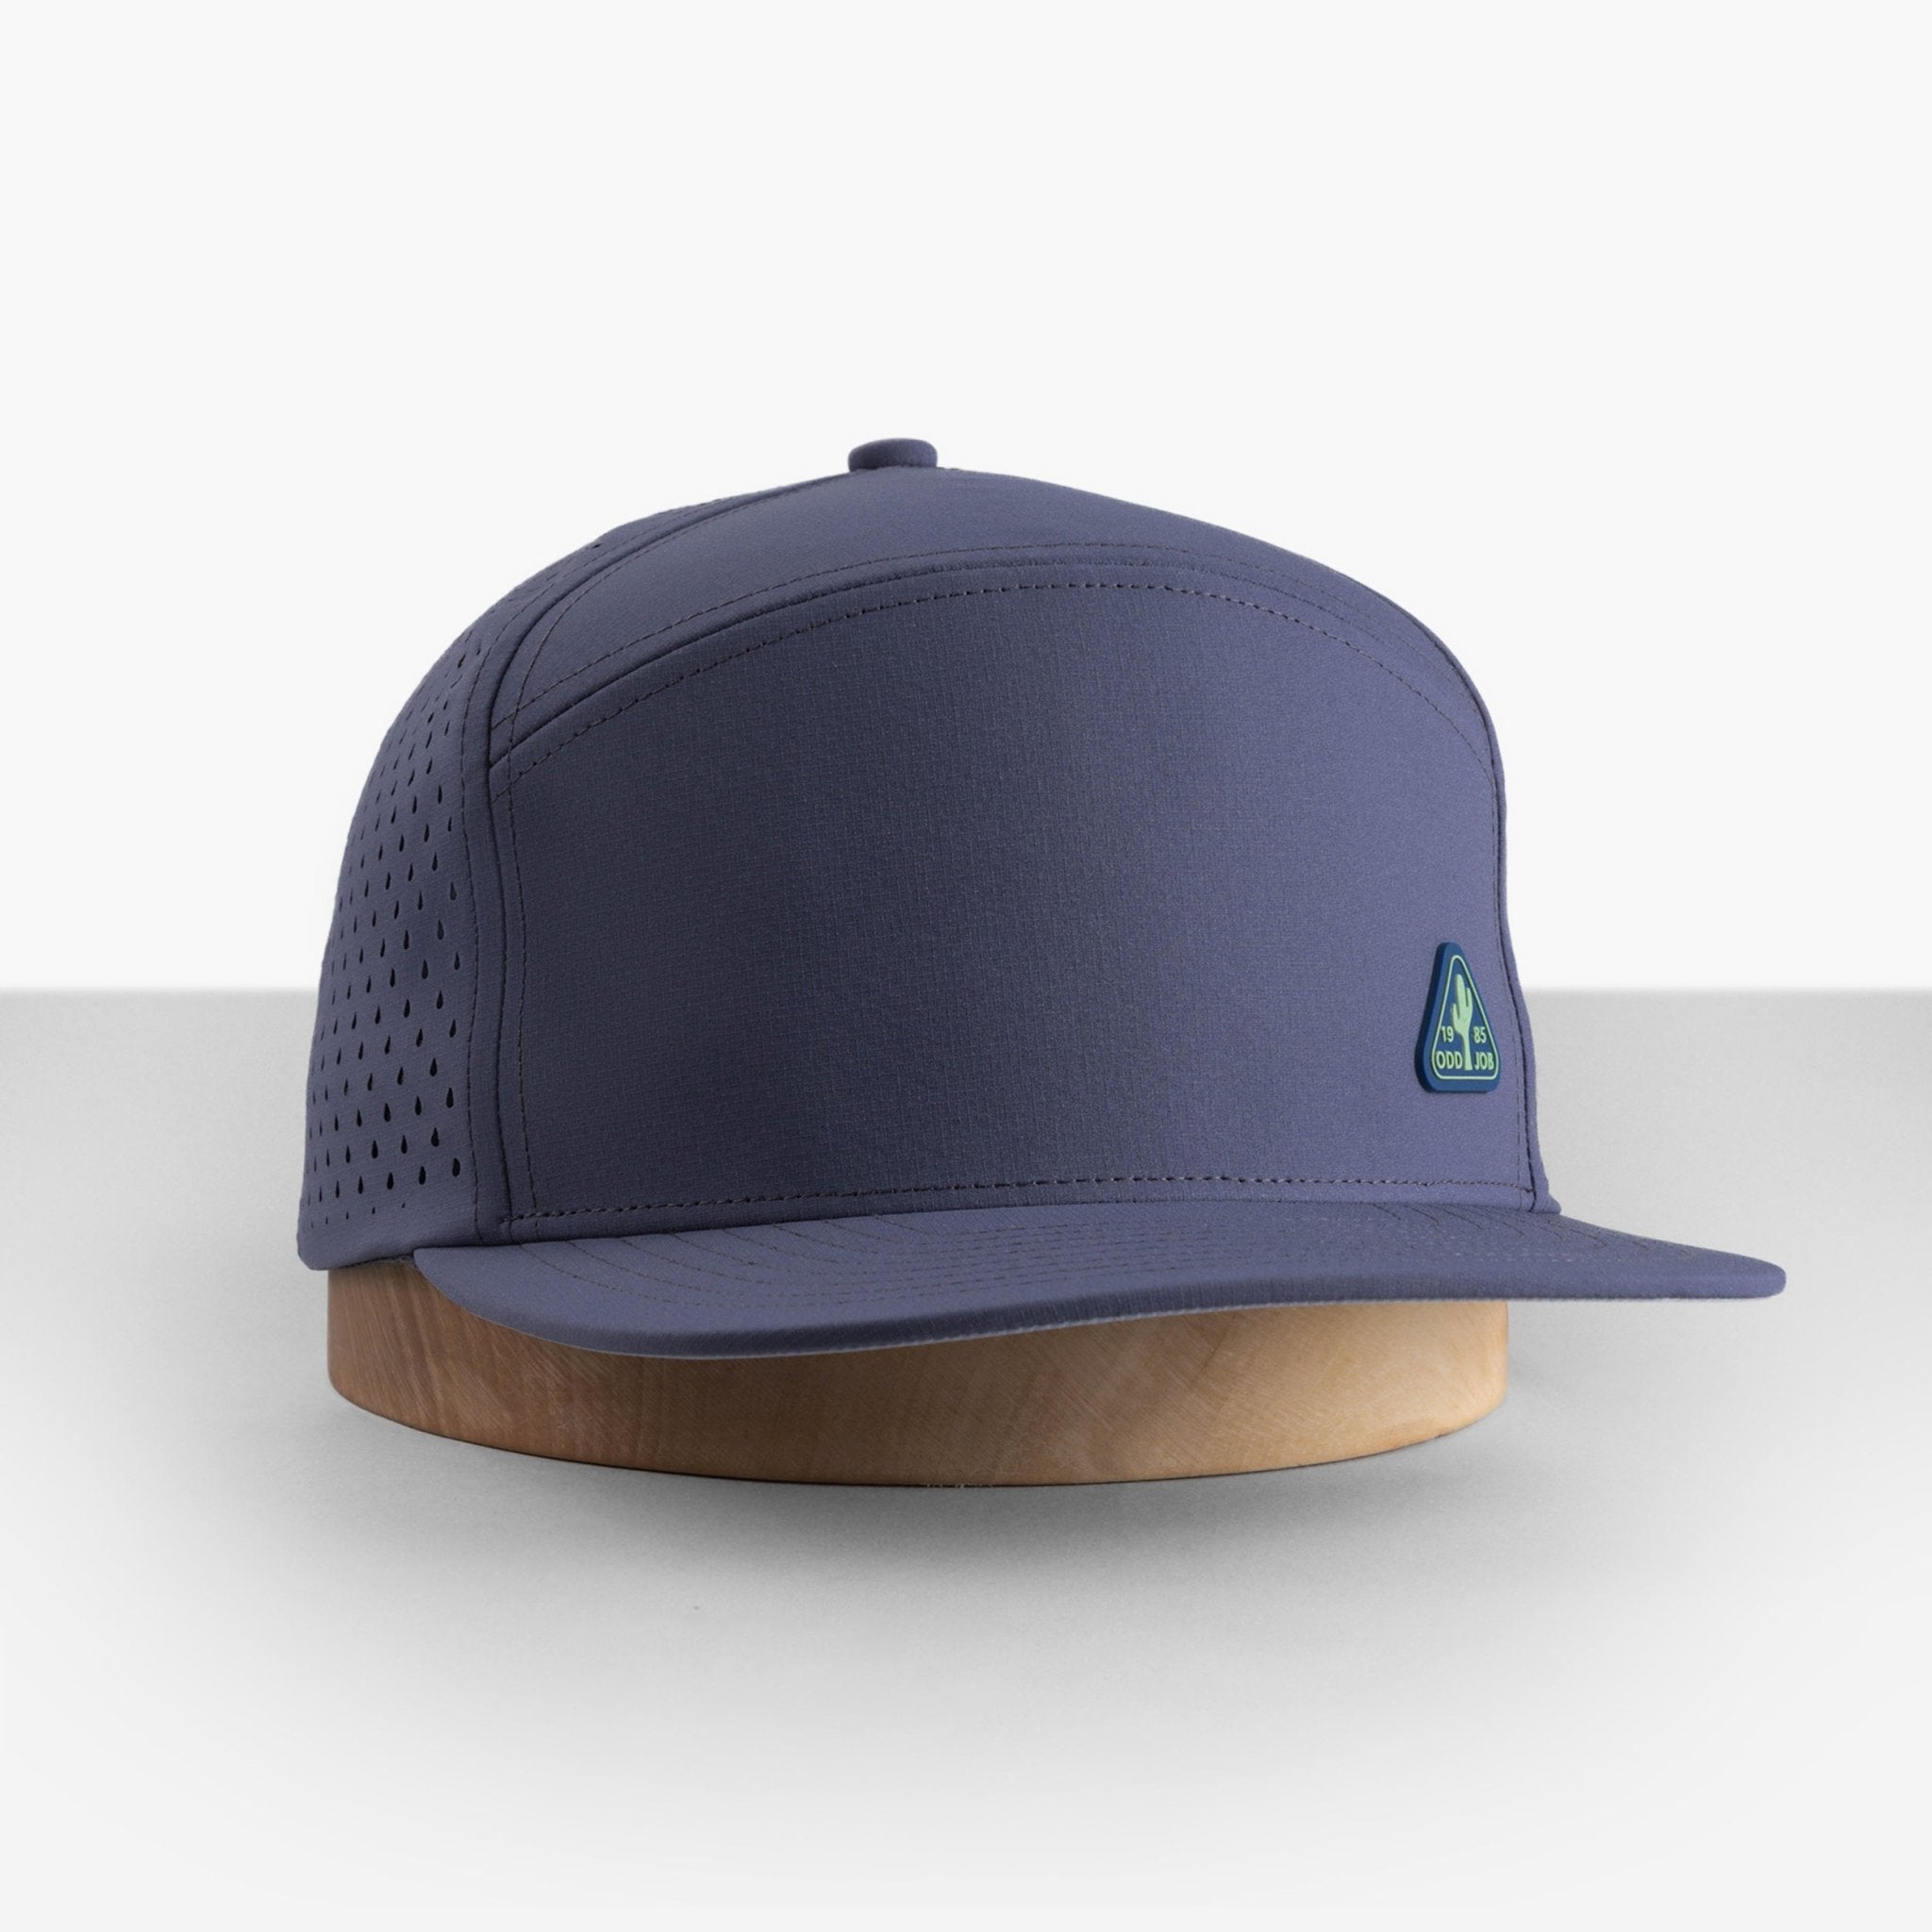 Big Structured Hats | Flat Bill Snapback Hats | Oddjob® Hats